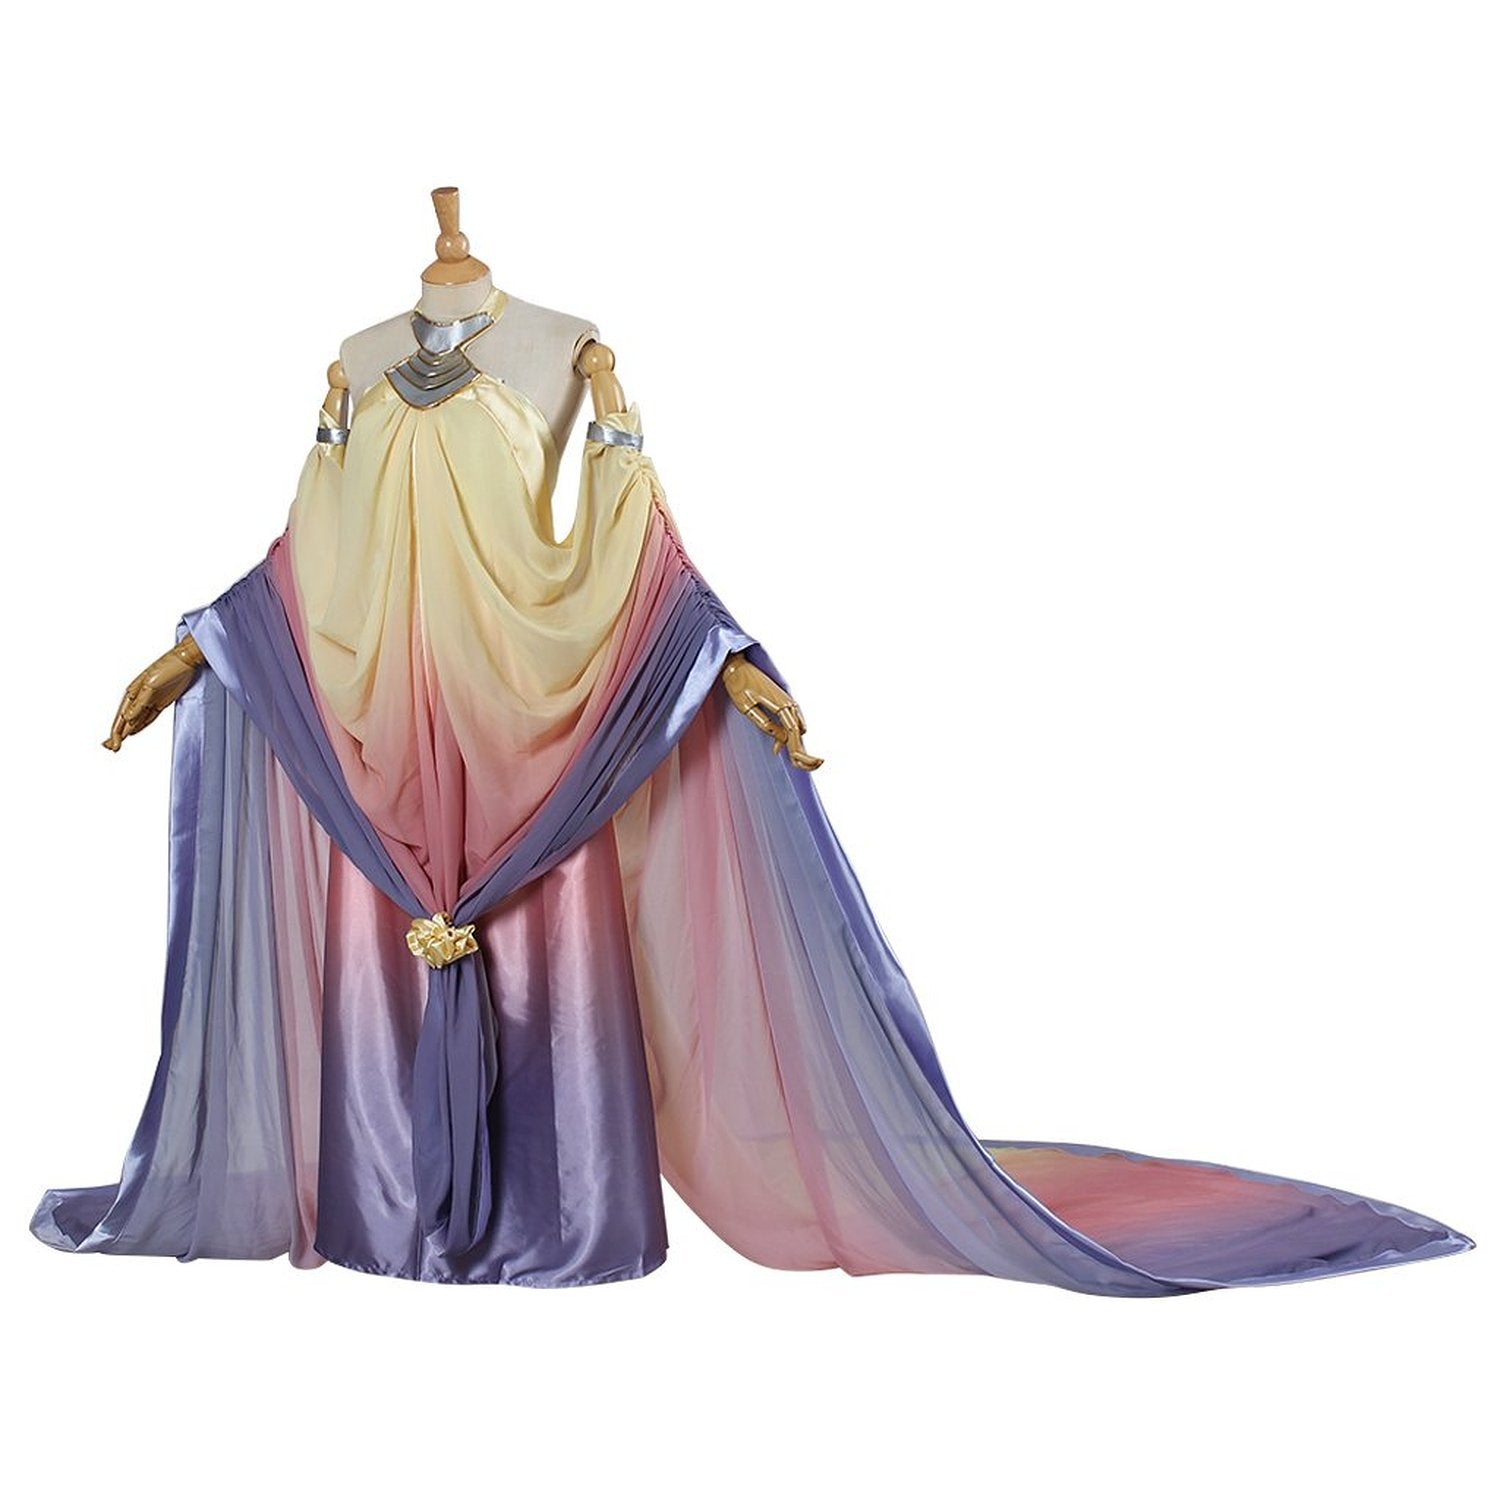 Star Wars Padme Naberrie Amidala Dress Cosplay Costume